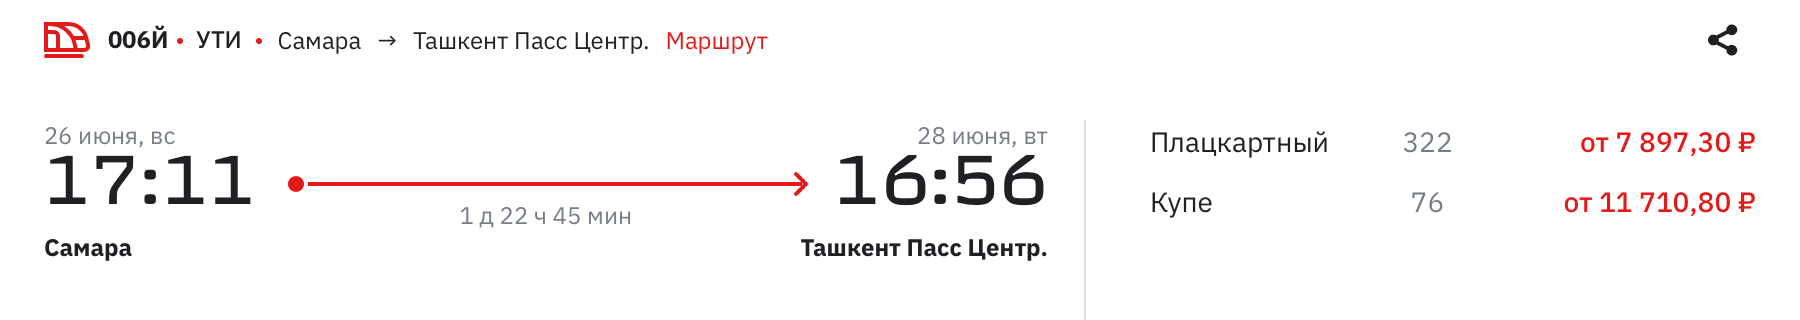 Из Самары в Ташкент поезд отправляется в 17:11. Источник: rzd.ru